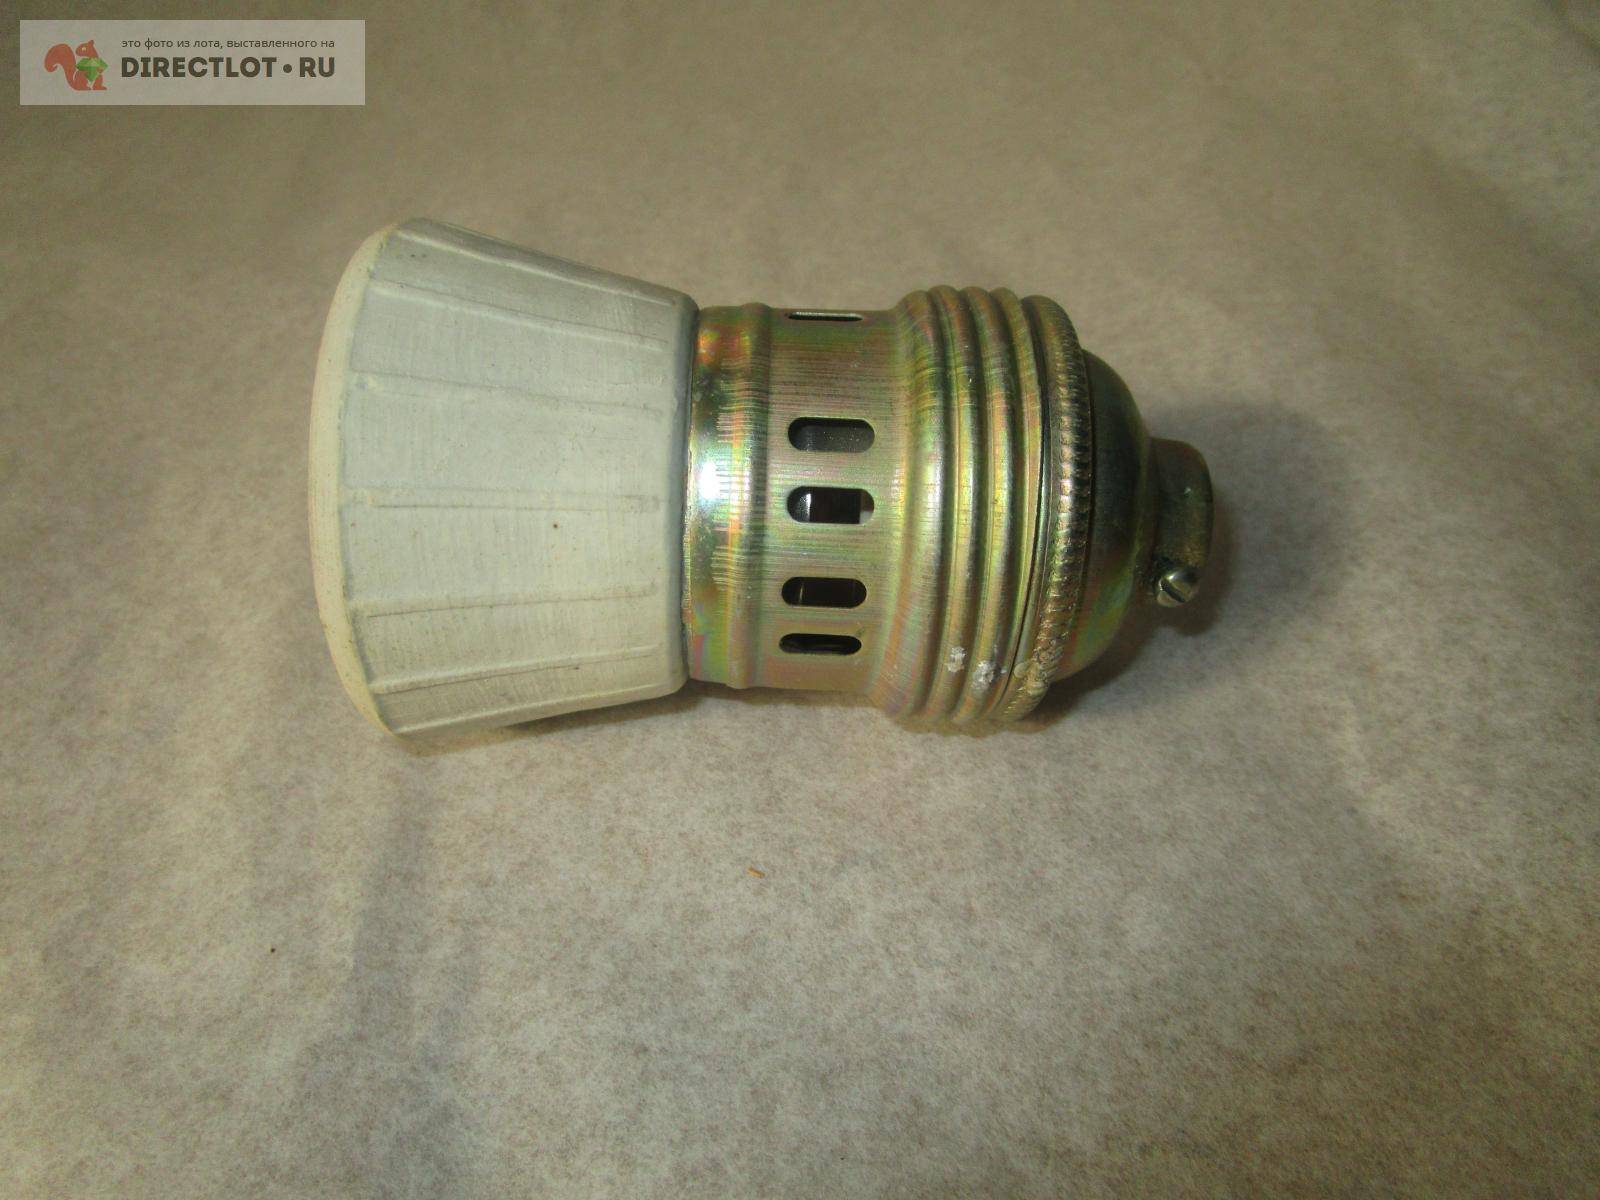  керамический Е-40 для ламп типа ДРЛ и т.п.  в Самаре цена .